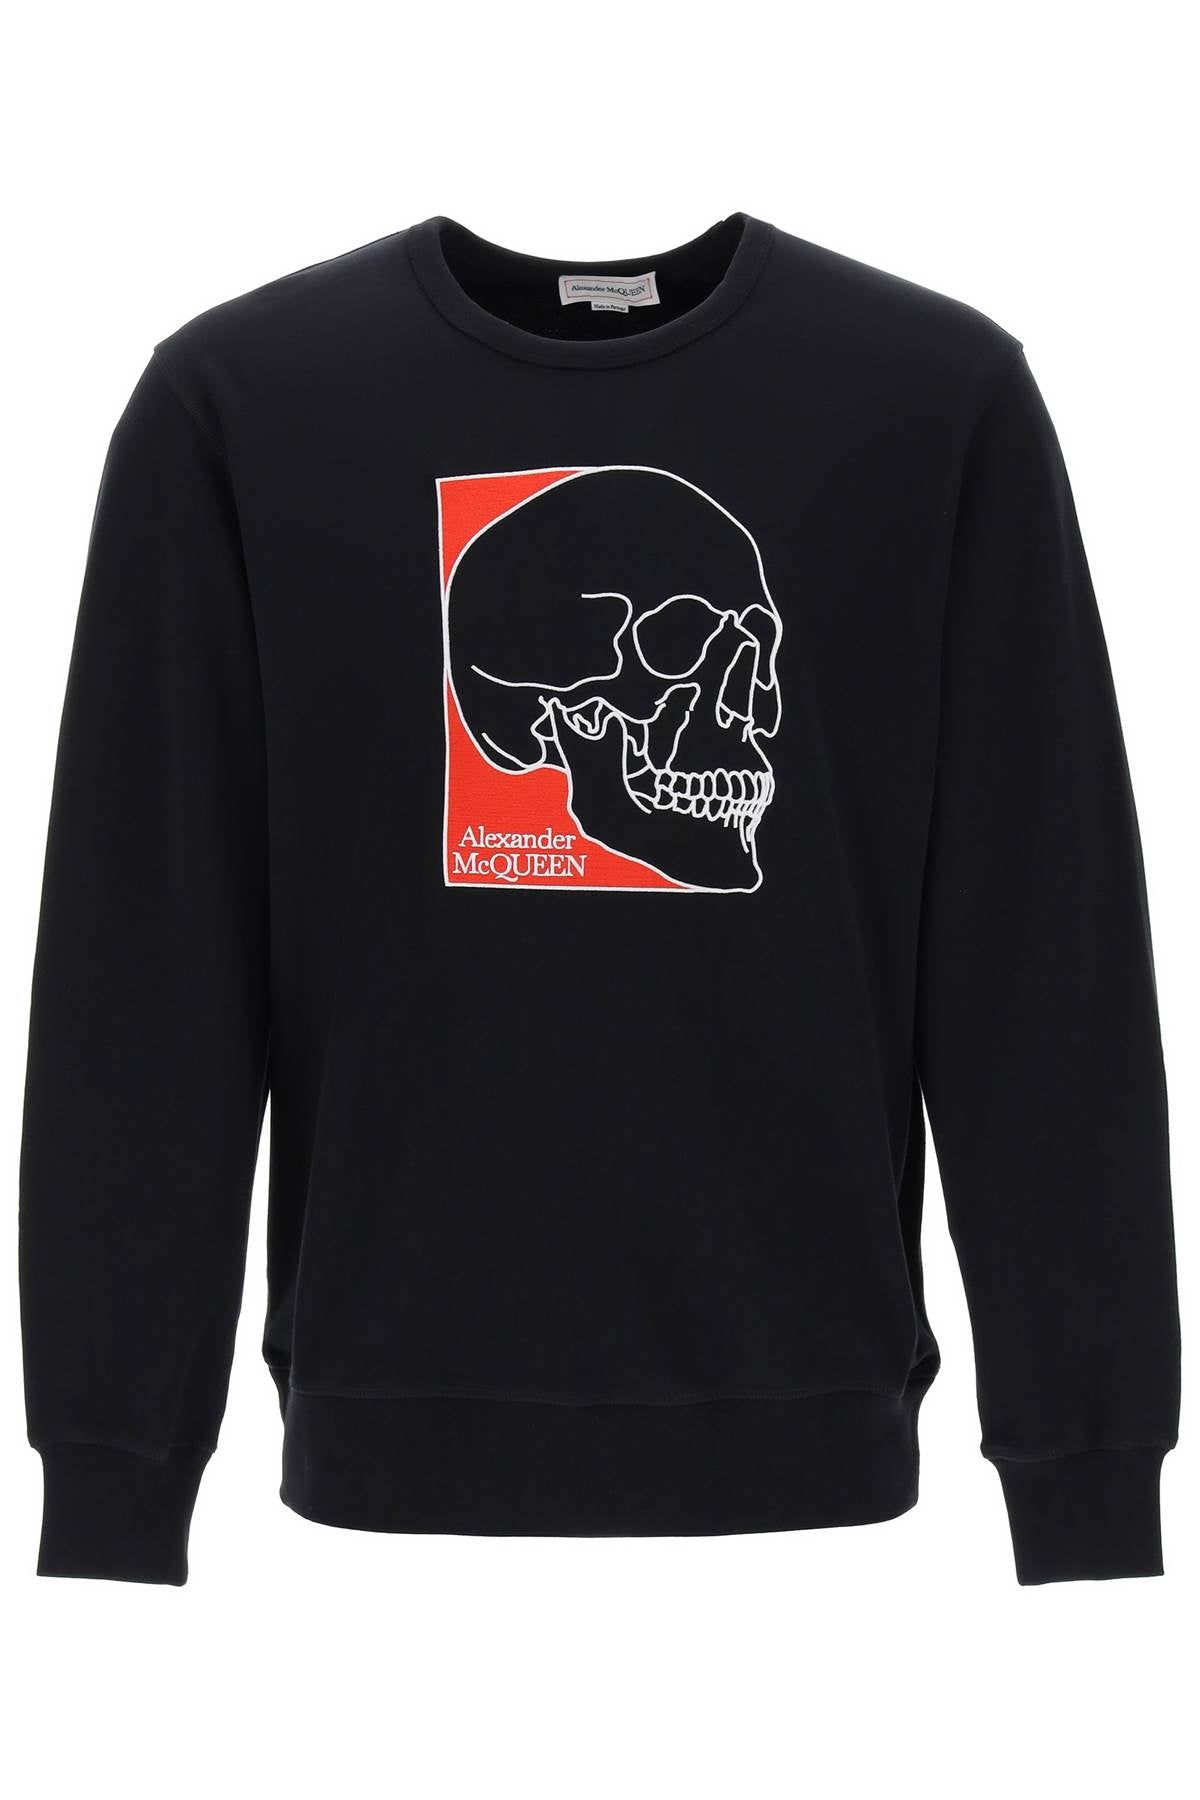 Alexander mcqueen crew-neck sweatshirt with skull embroidery-0